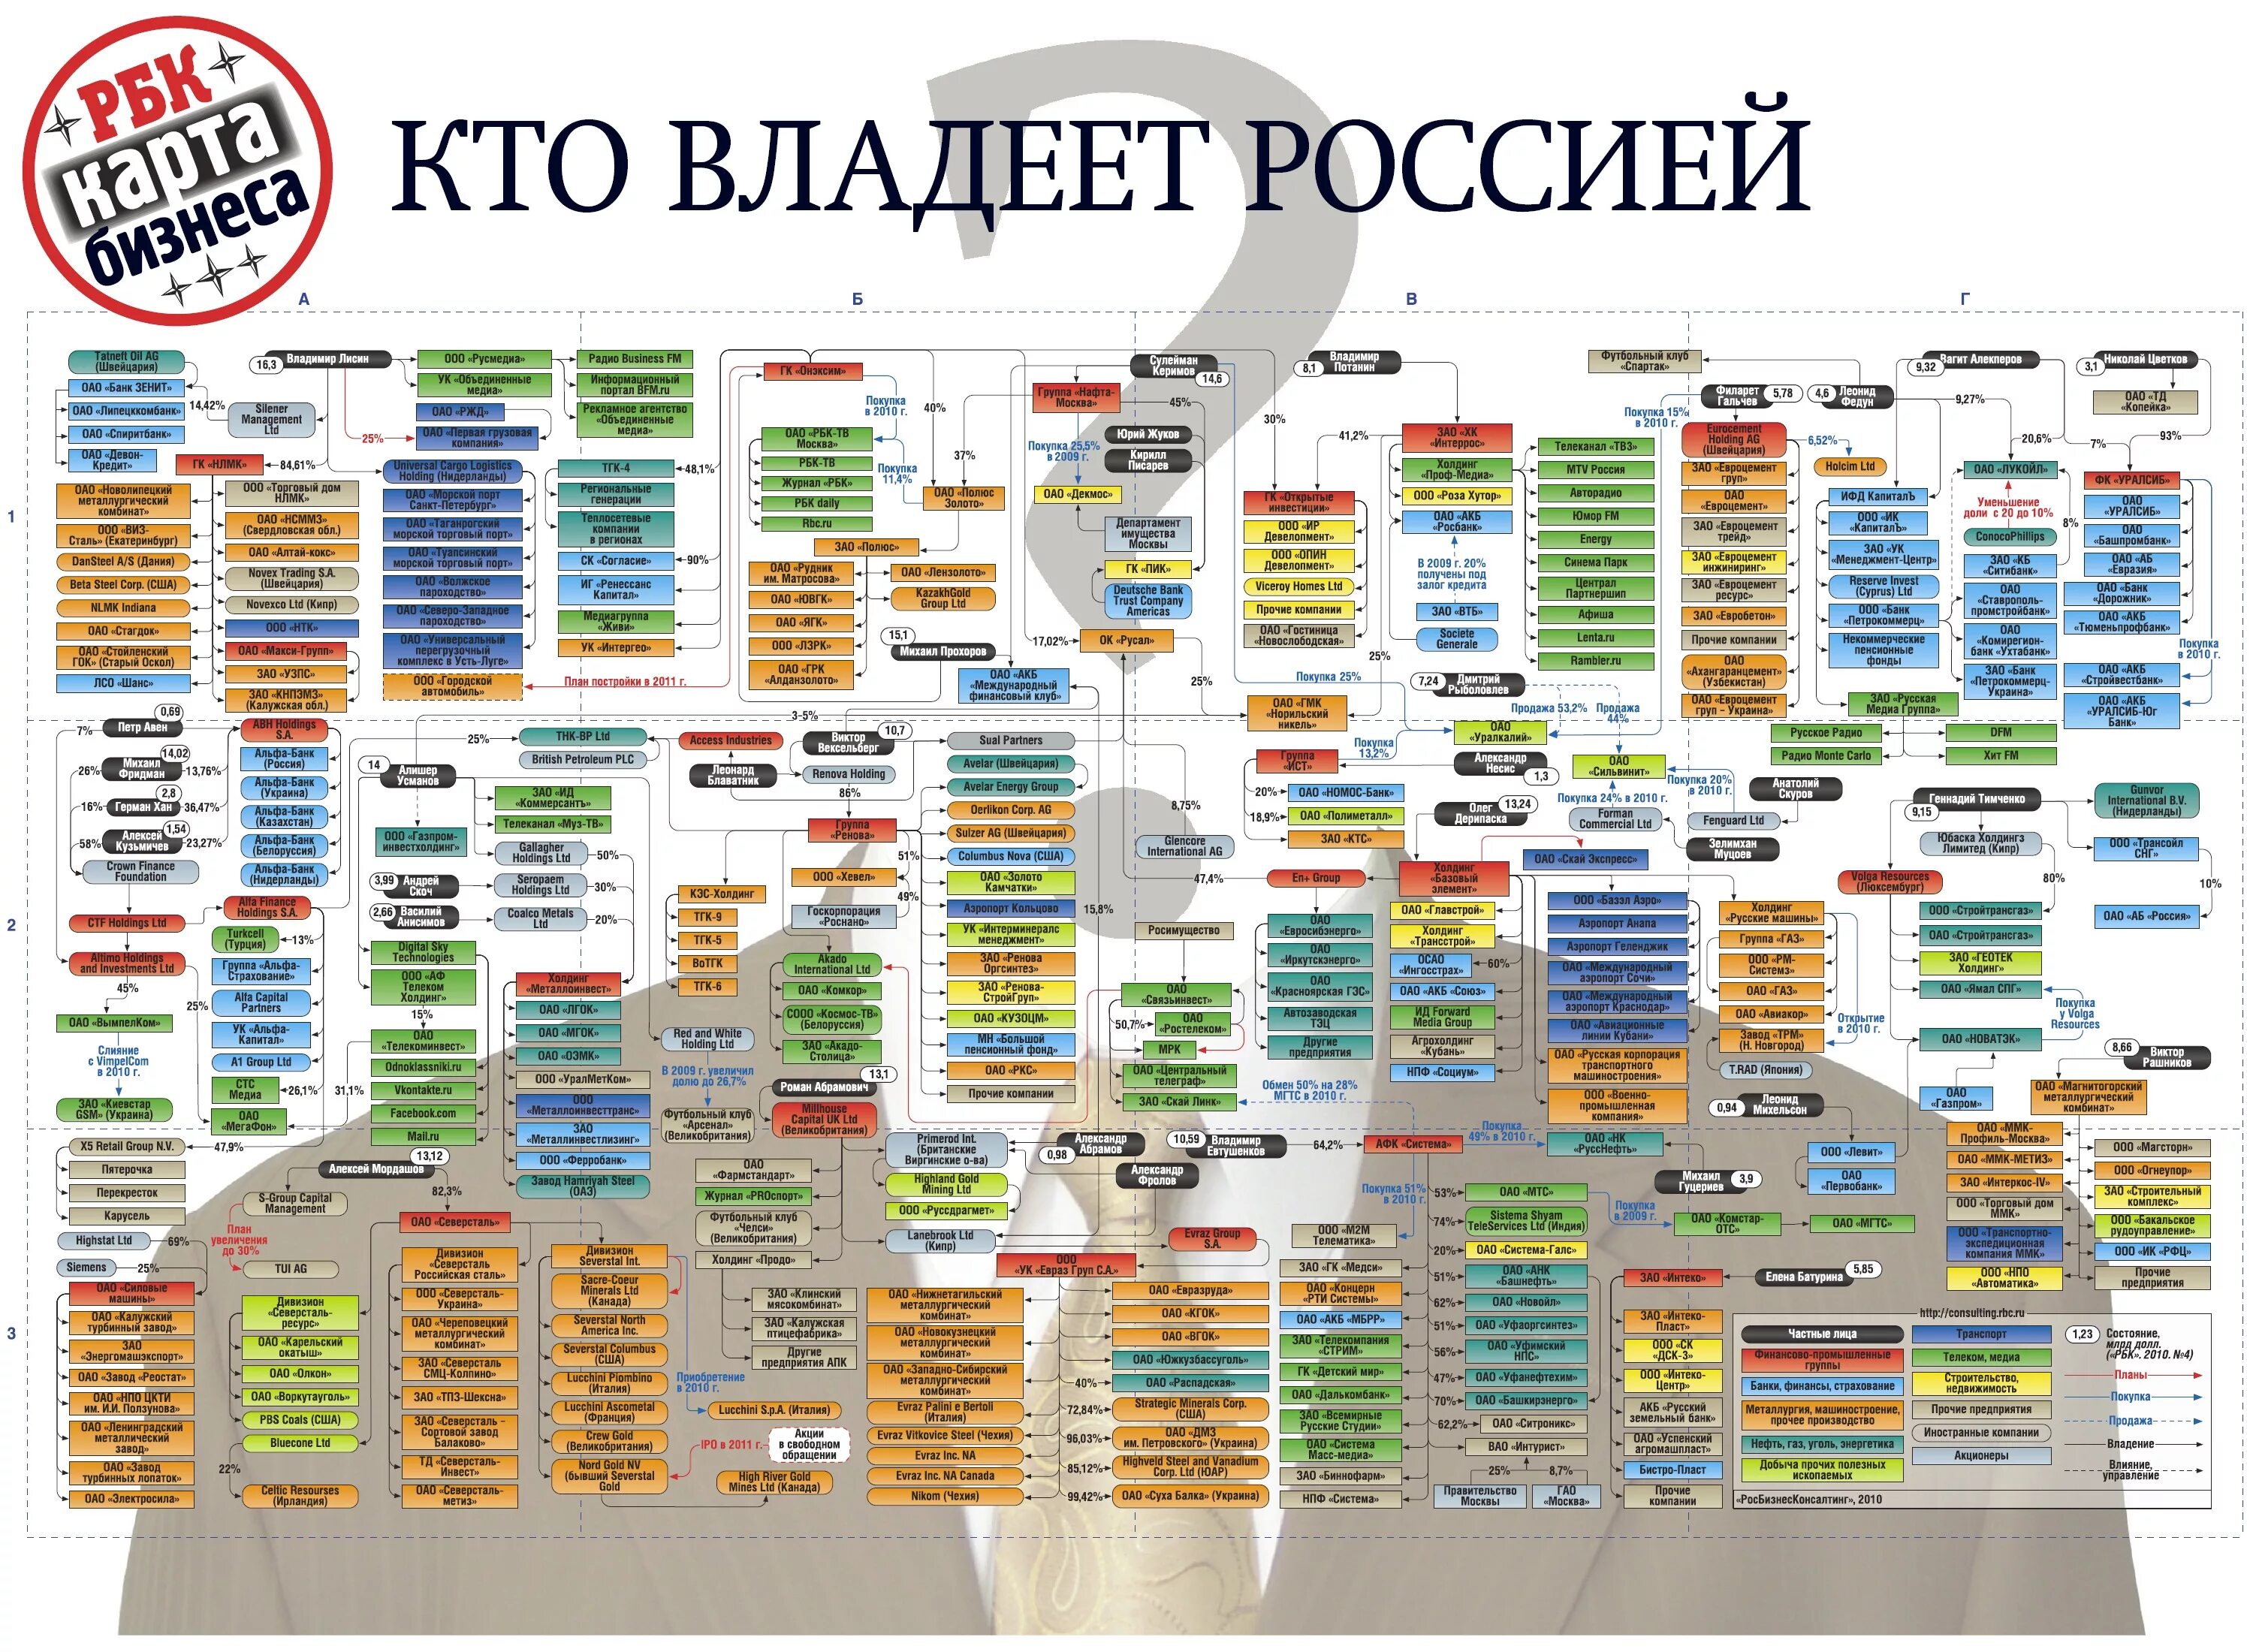 Бизнес карта организации. Кто владеет Россией РБК 2020. Кому принадлежат предприятия в России. Кому принадлежат российские компании. Кто владеет Россией РБК.